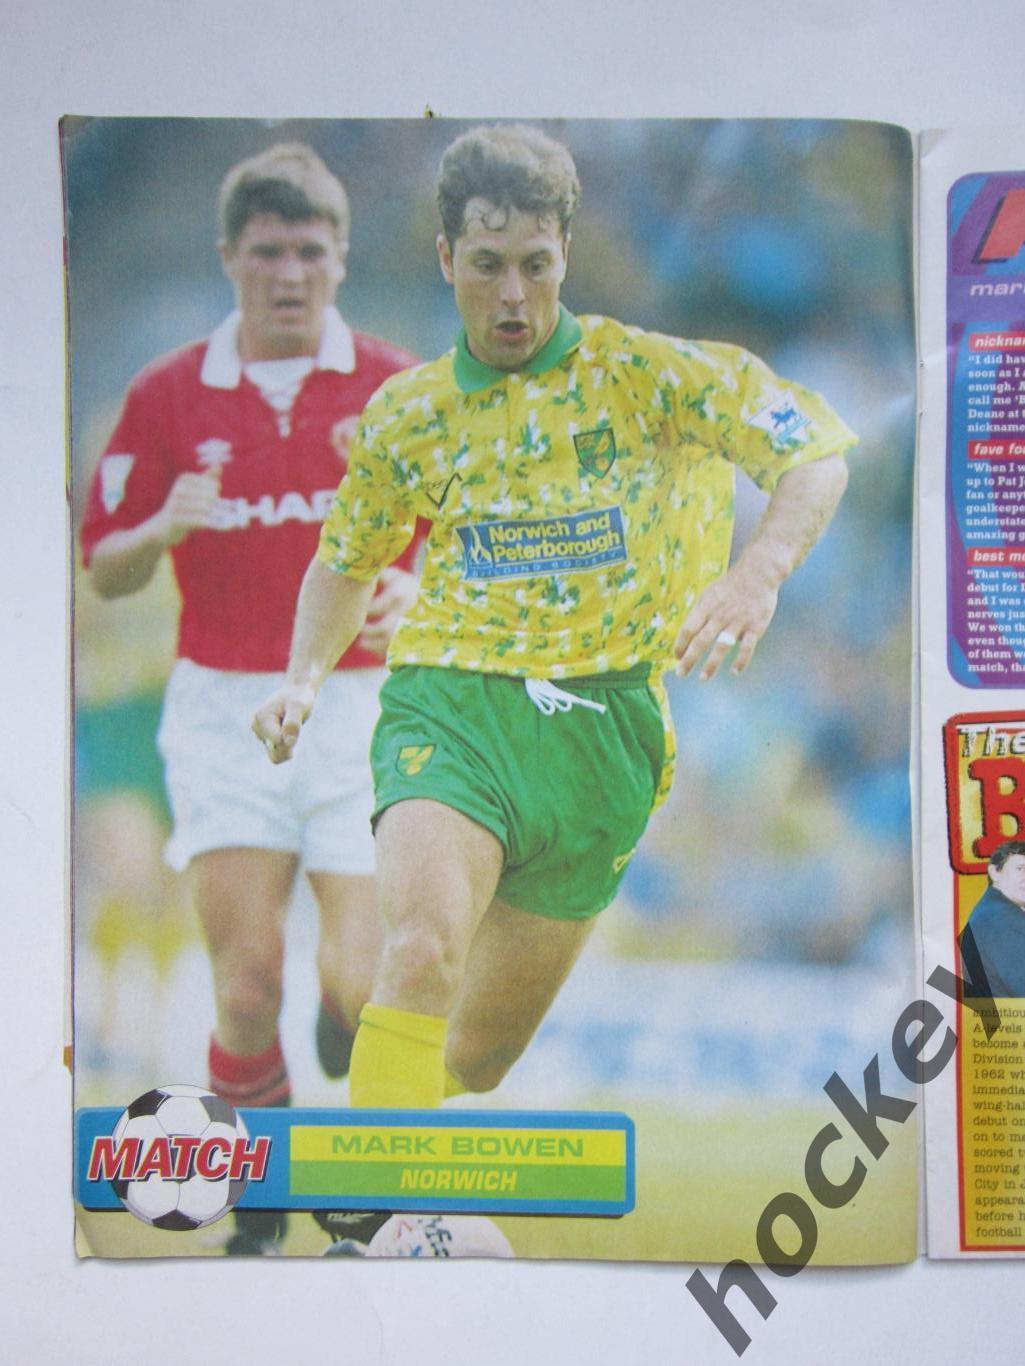 Журнал Match (август 1994 год). Несколько постеров 3